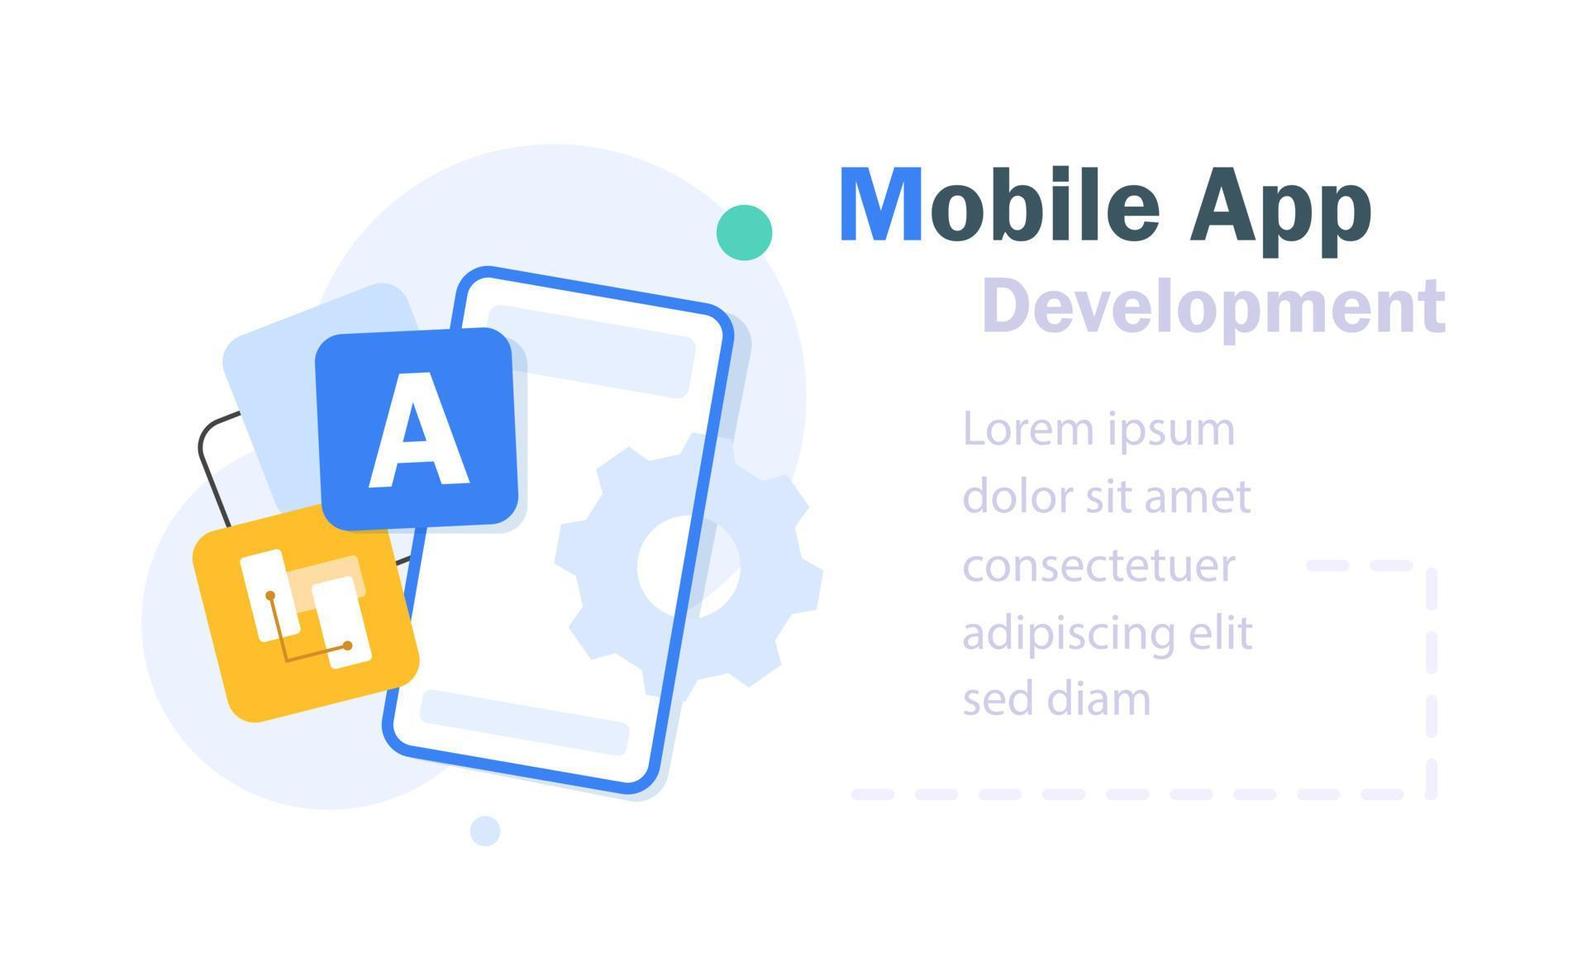 mobil app utveckling begrepp, smartphone teknologi, systemet uppgradera vektor